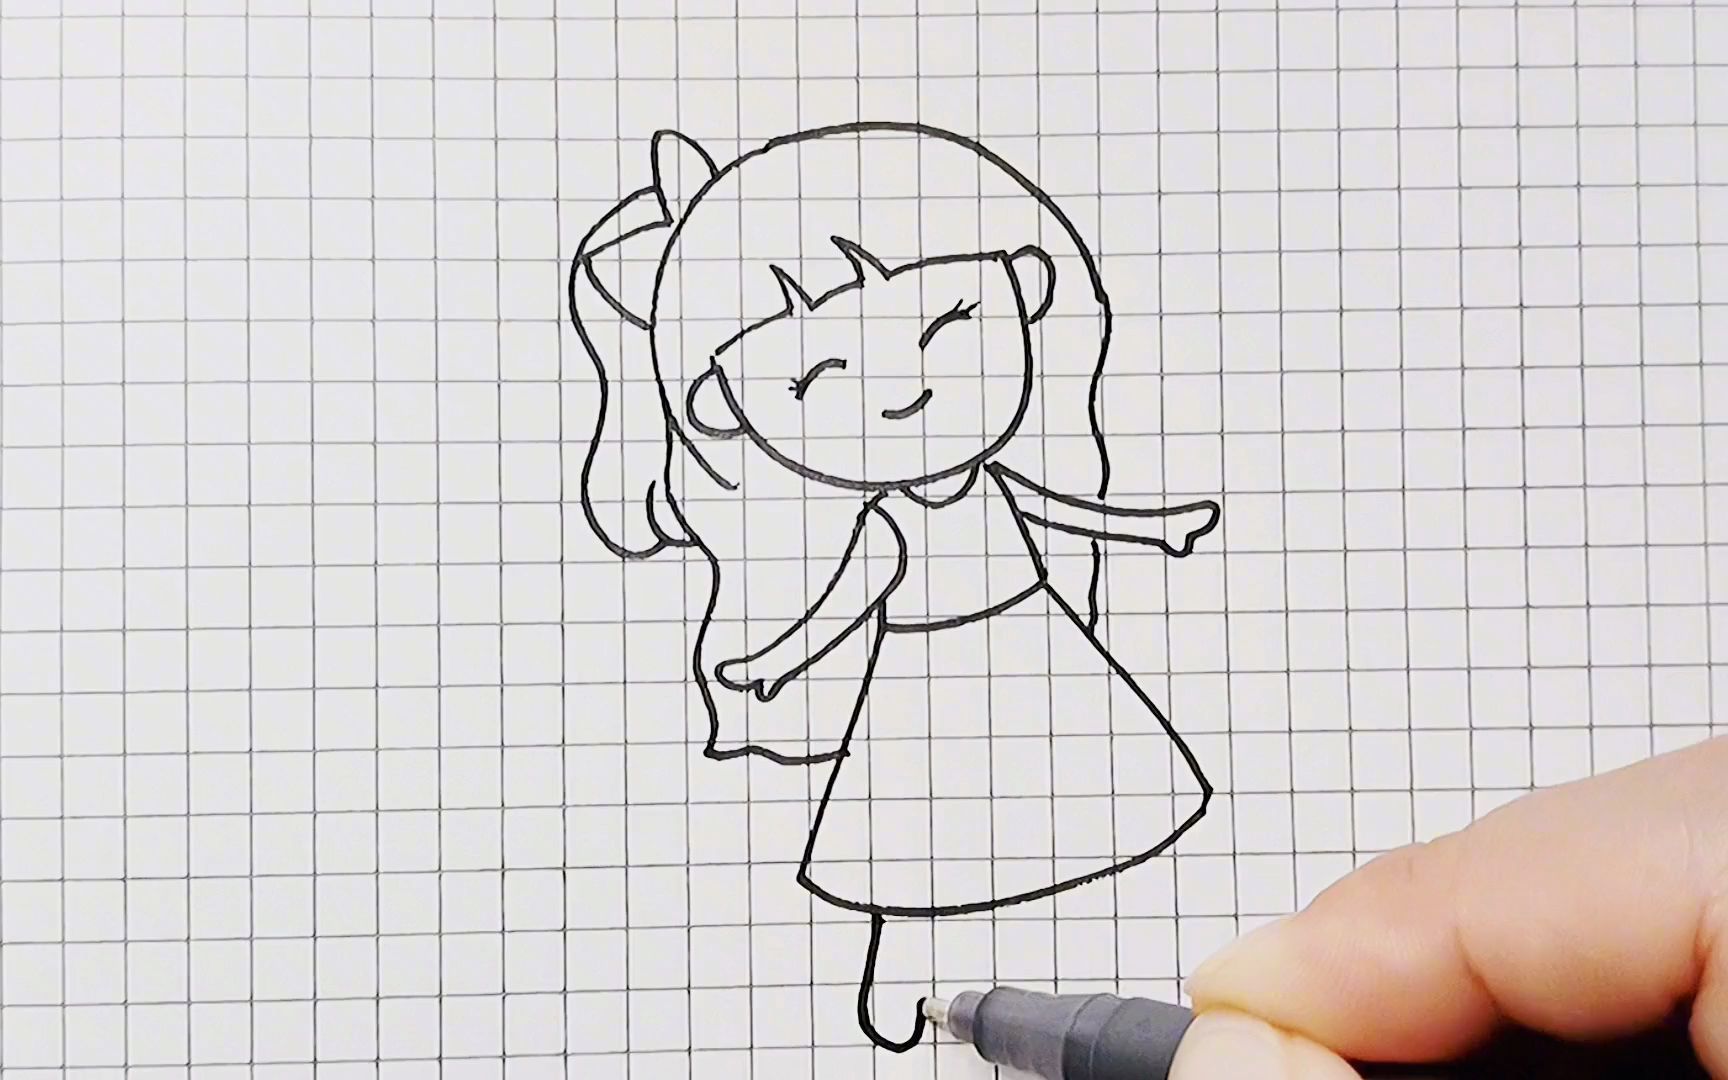 一个很快乐的小女生简笔画,喜欢的带走吧!